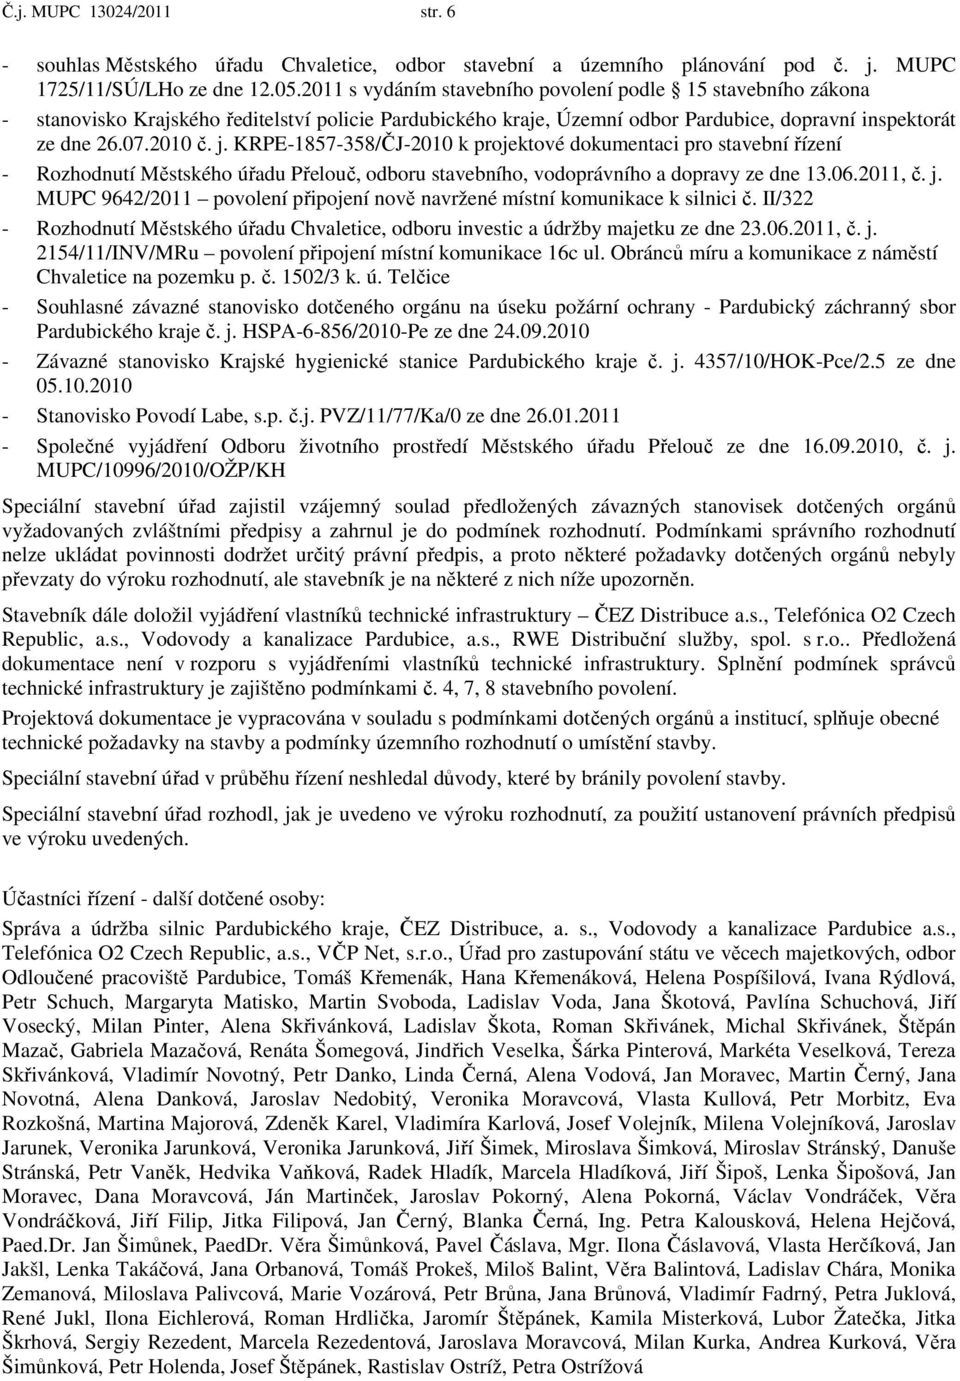 KRPE-1857-358/ČJ-2010 k projektové dokumentaci pro stavební řízení - Rozhodnutí Městského úřadu Přelouč, odboru stavebního, vodoprávního a dopravy ze dne 13.06.2011, č. j.